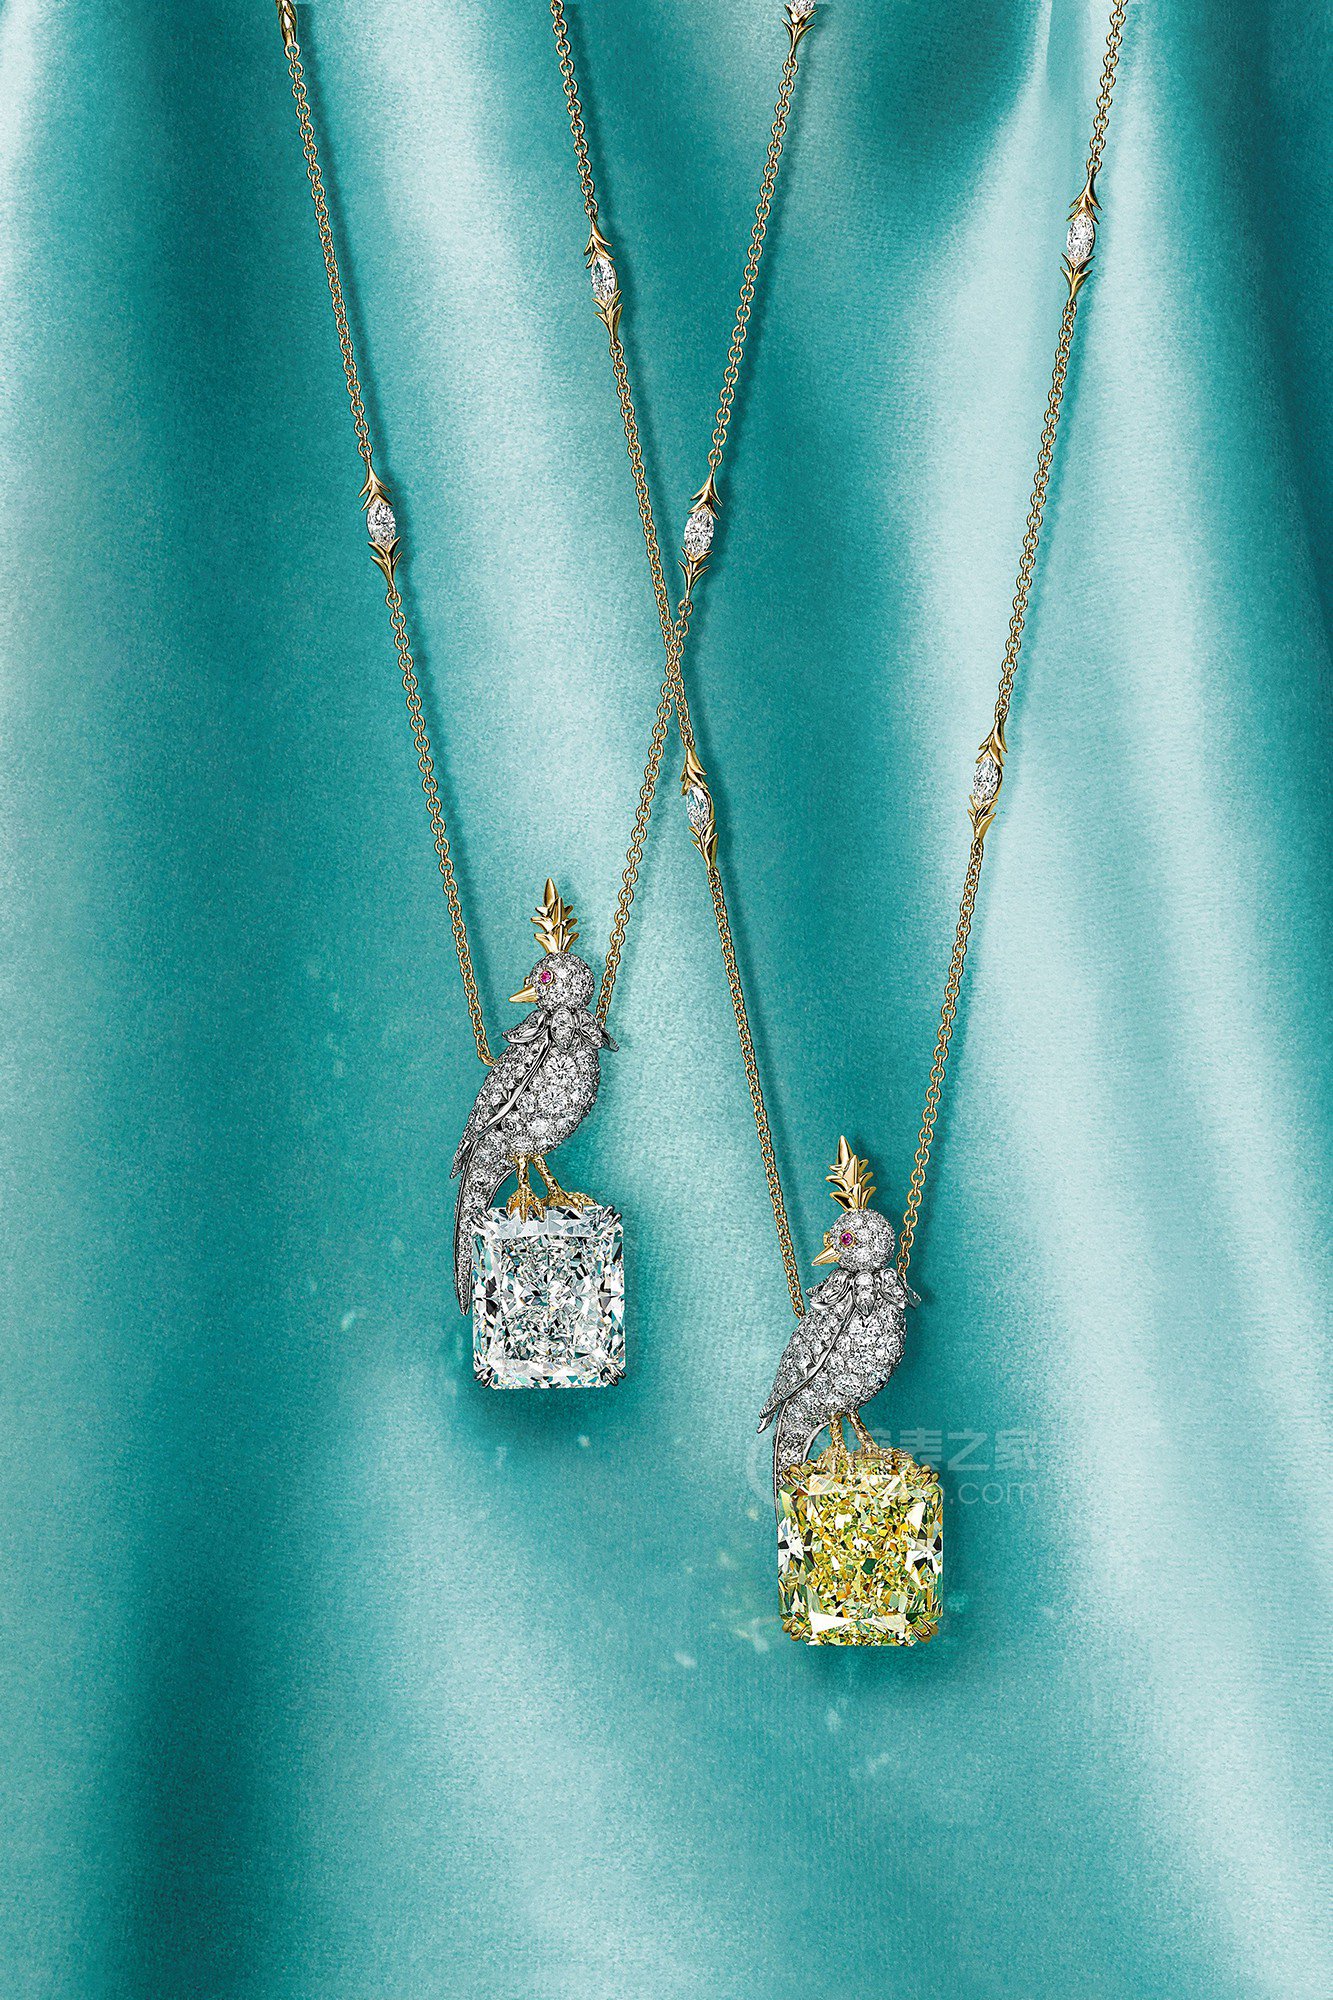 蒂芙尼史隆伯杰系列铂金及18K黄金镶嵌一颗重逾20克拉的钻石，粉色蓝宝石及钻石“石上鸟”项链项链